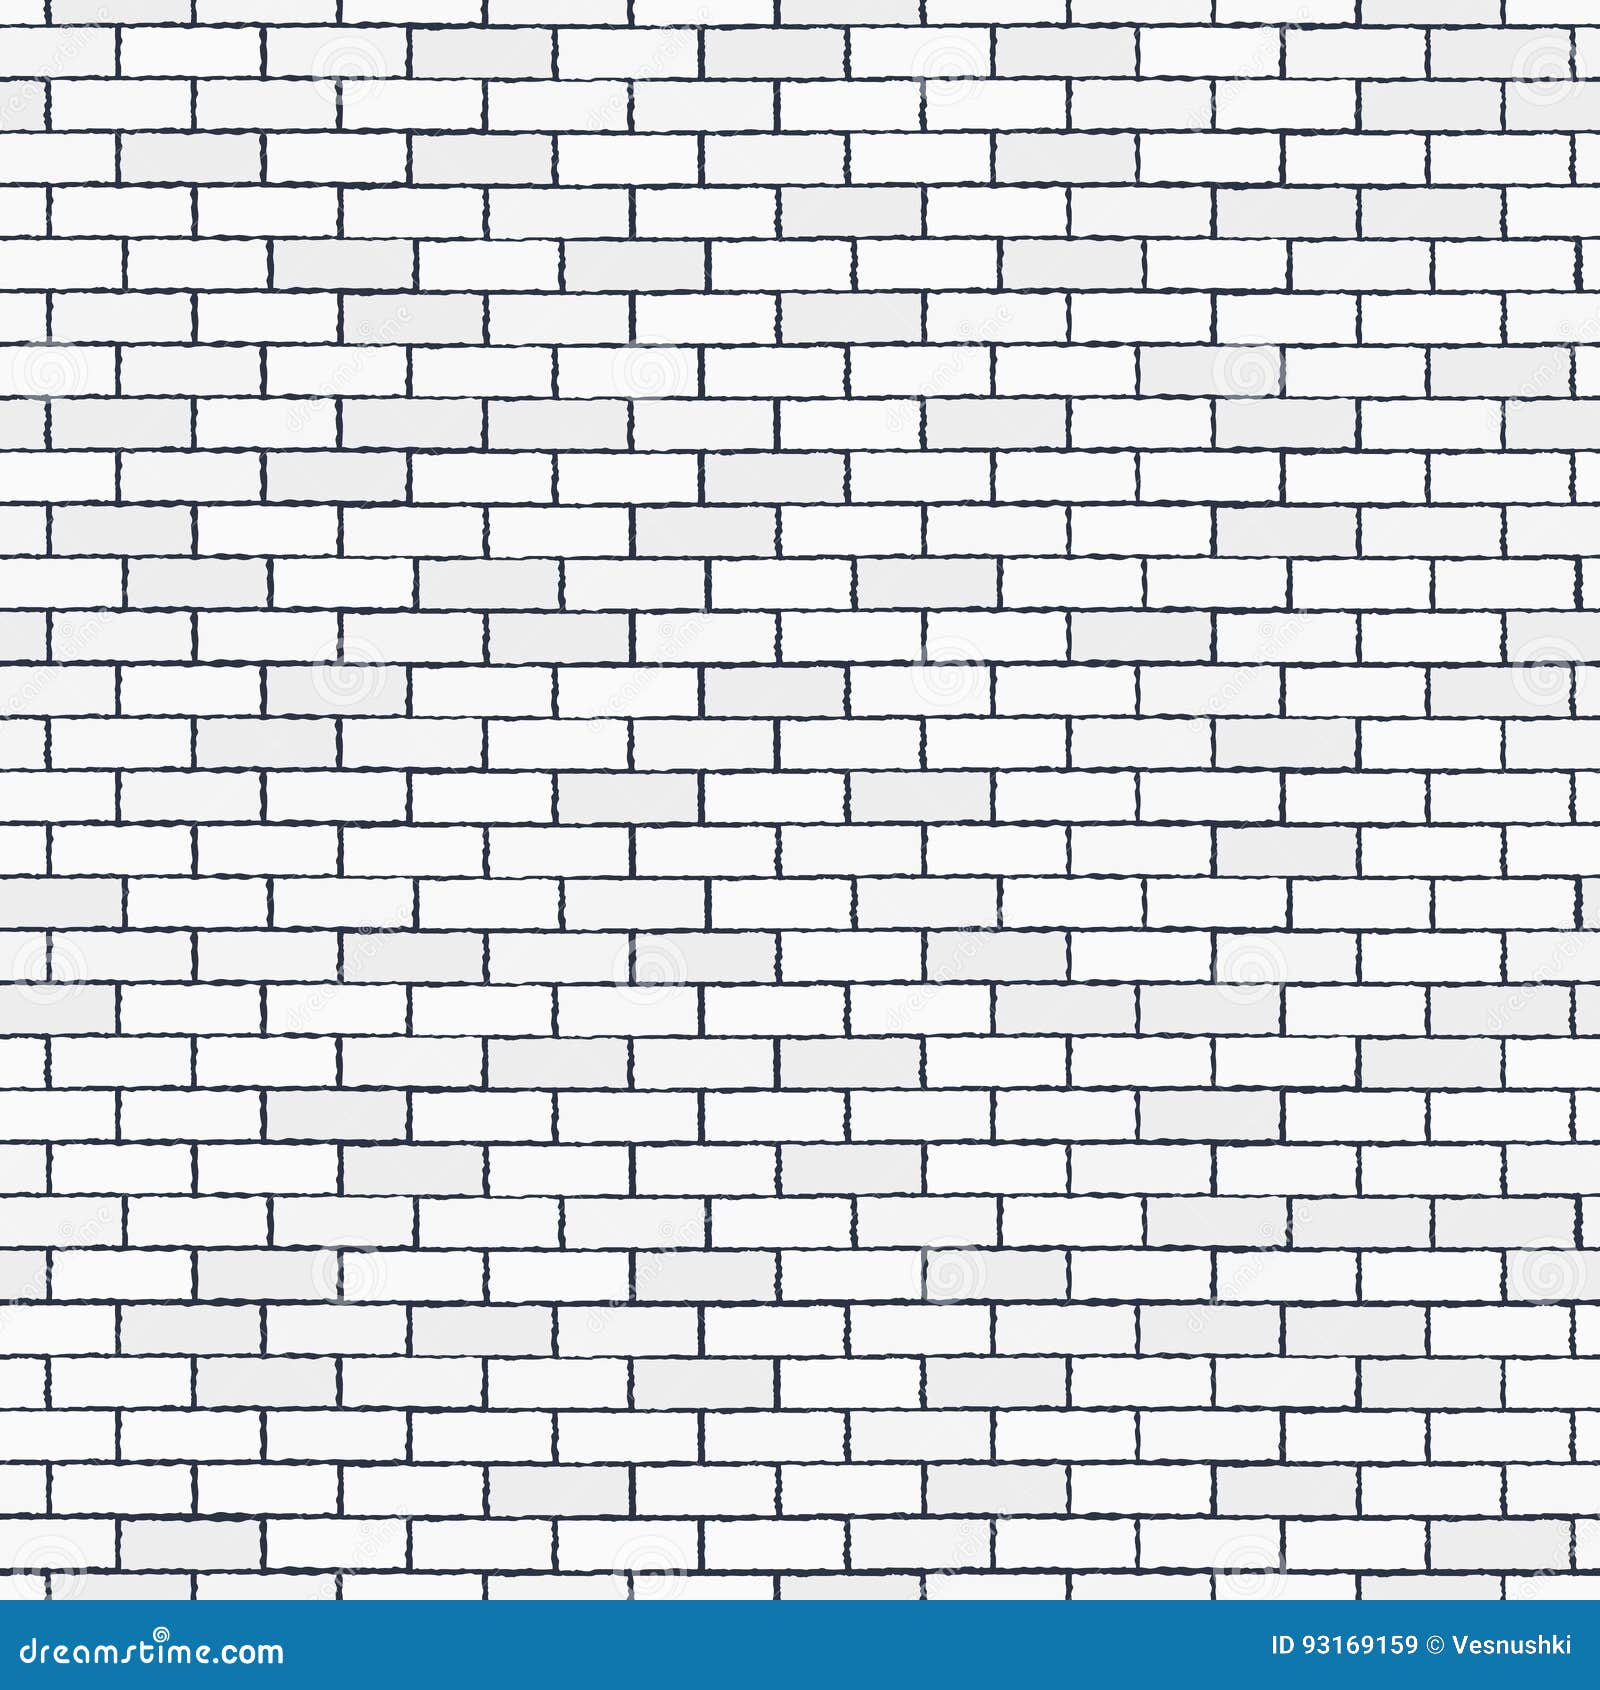 white seamless brick wall, pattern stonework background